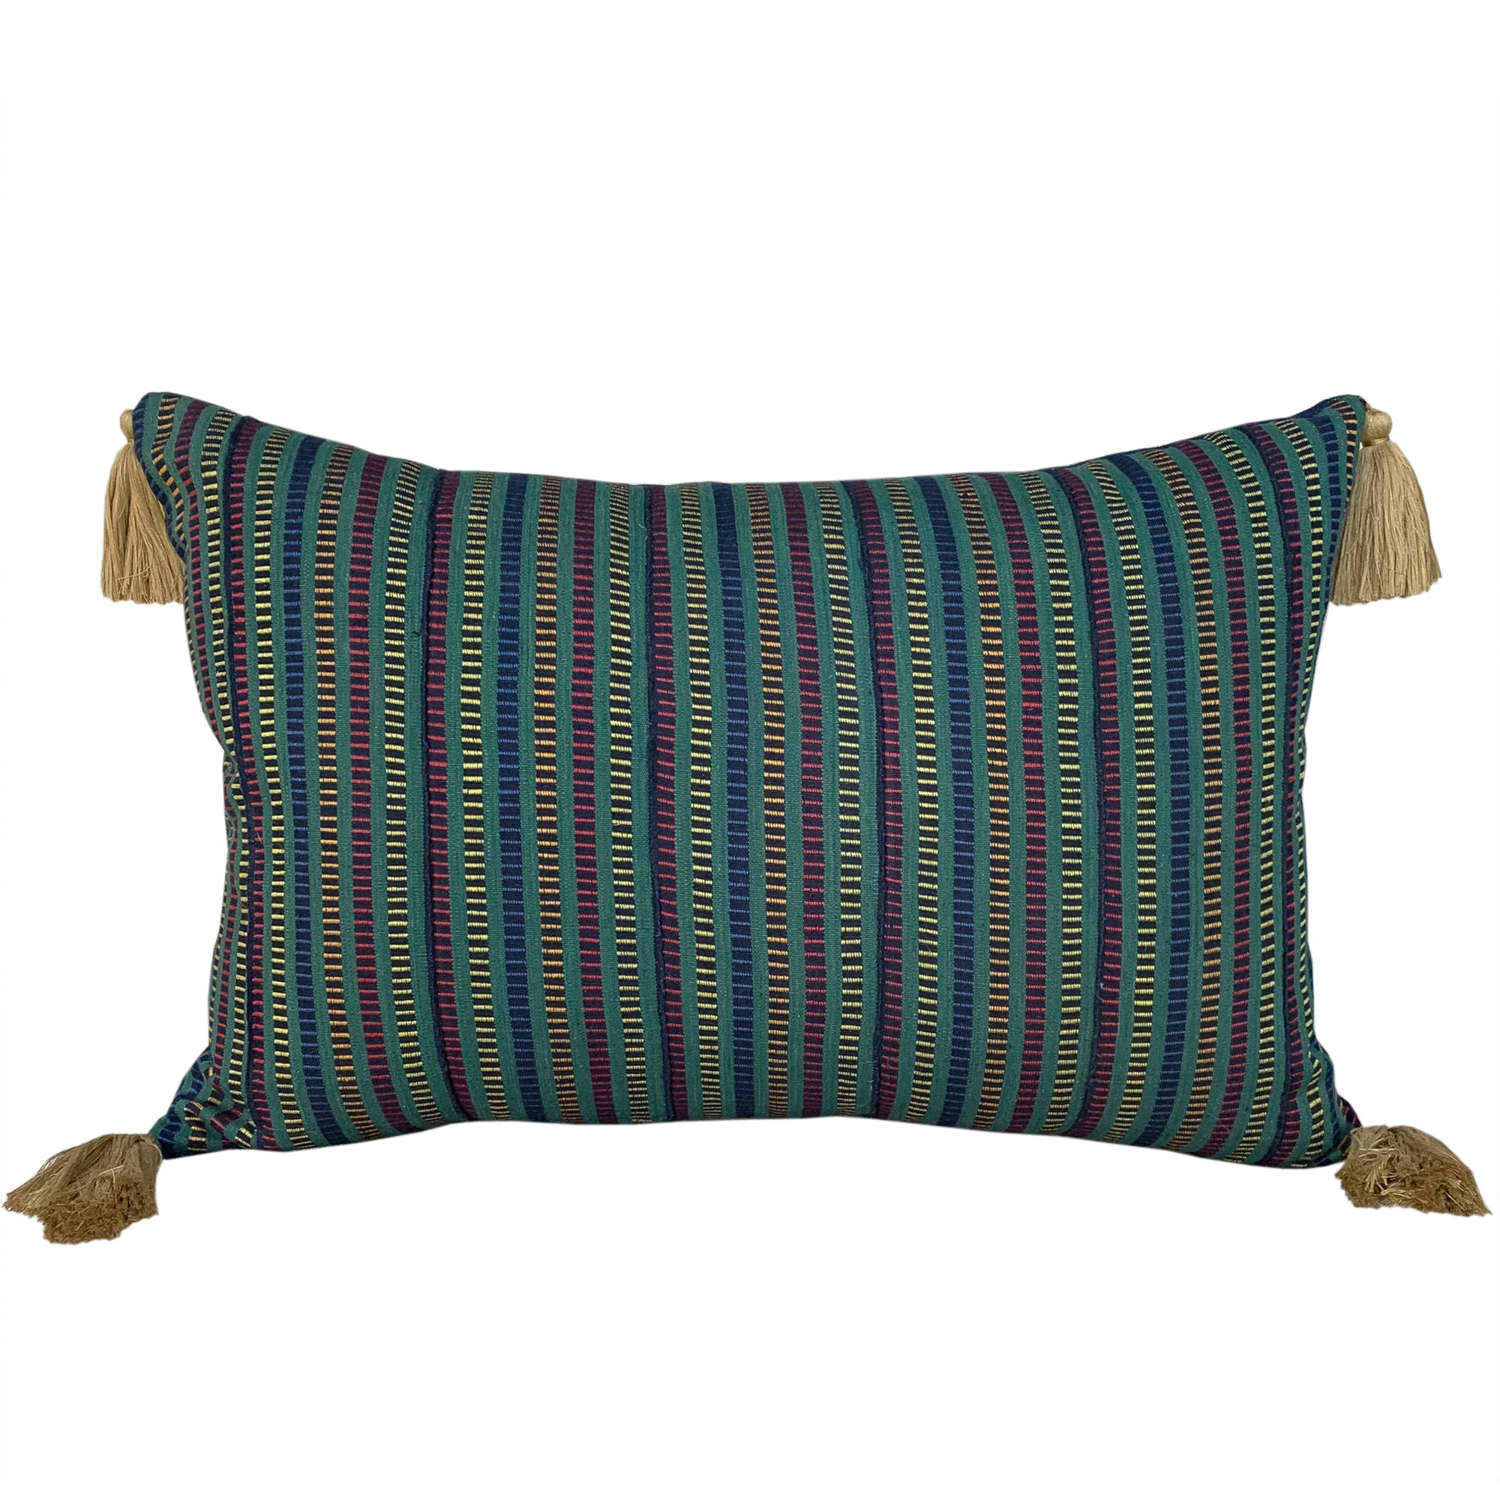 Green Ewe cushions with tassels